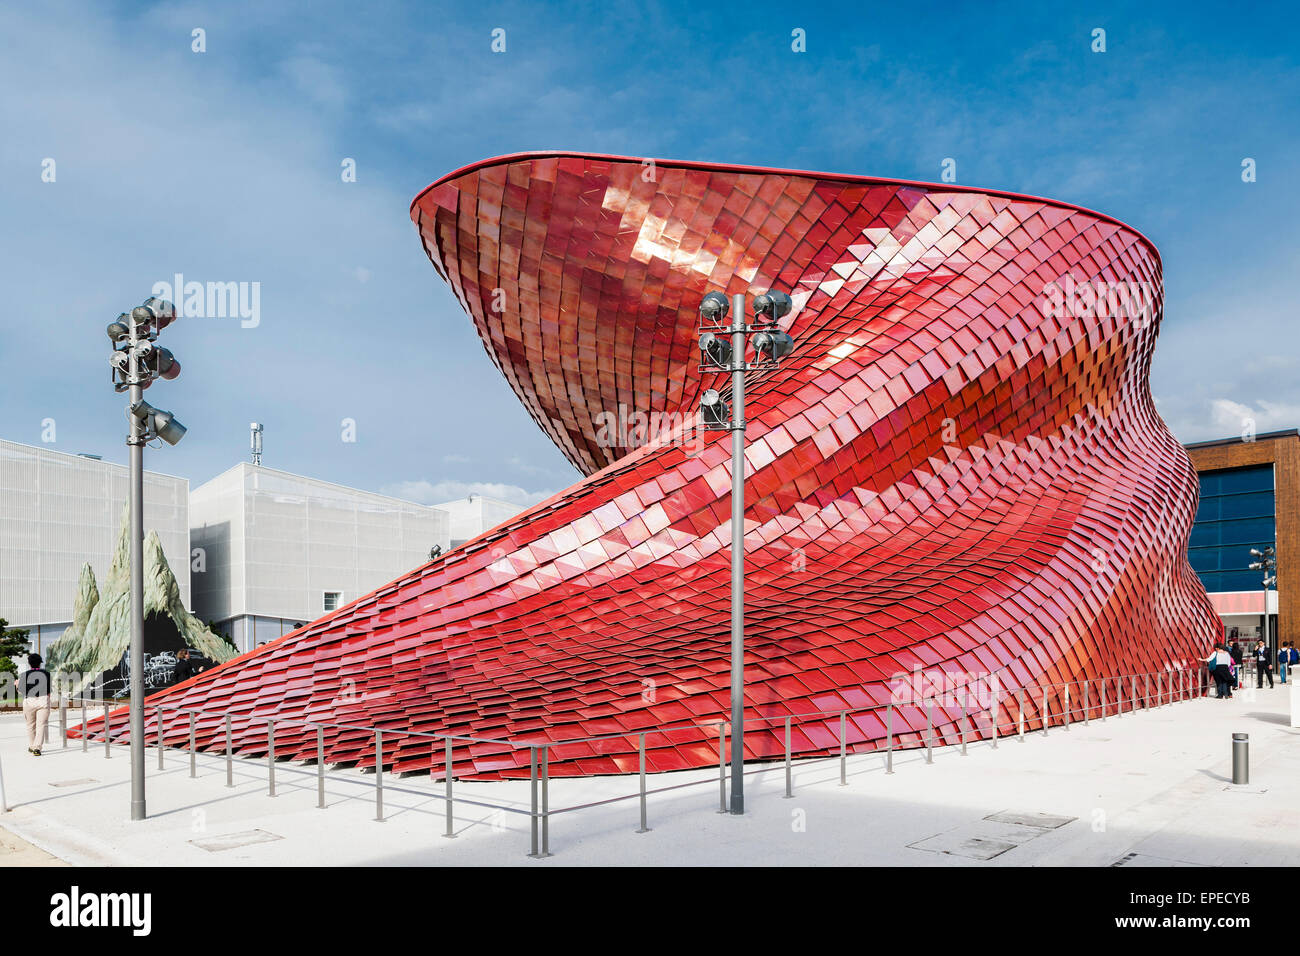 Una scultura, facciata a serpentina. Milano Expo 2015, Padiglione Vanke, Milano, Italia. Architetto: Daniel Libeskind, 2015. Foto Stock